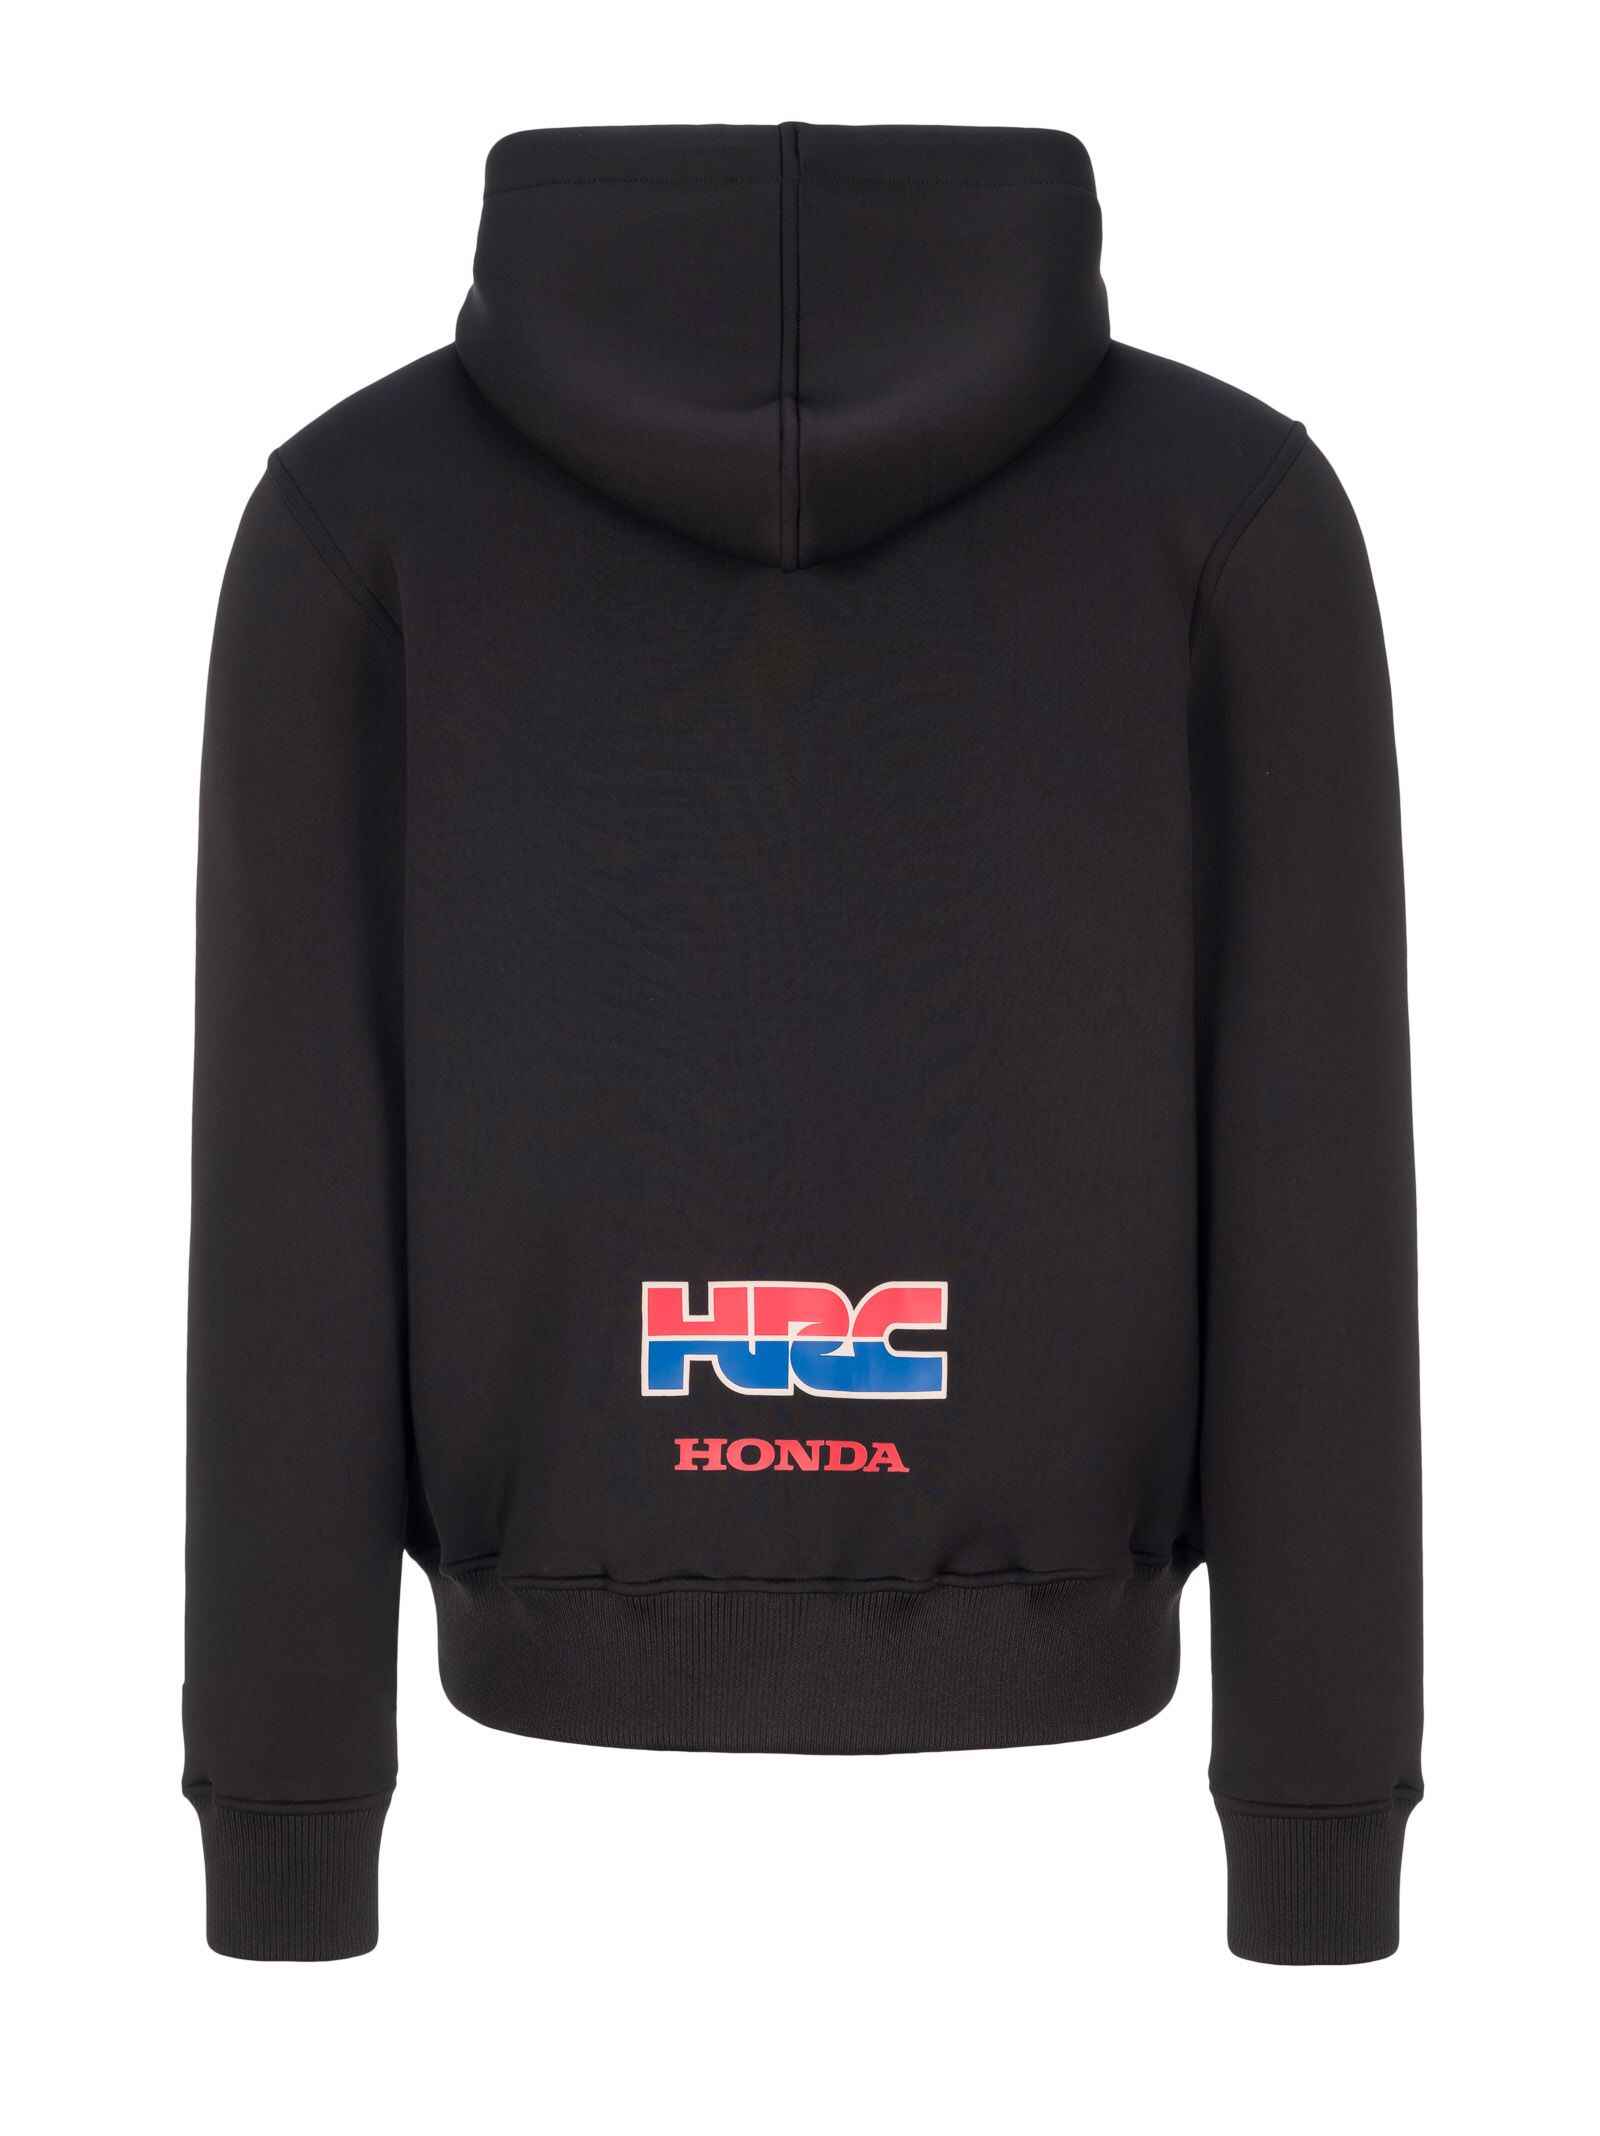 Veste néoprène homme Honda HRC noir vue dos